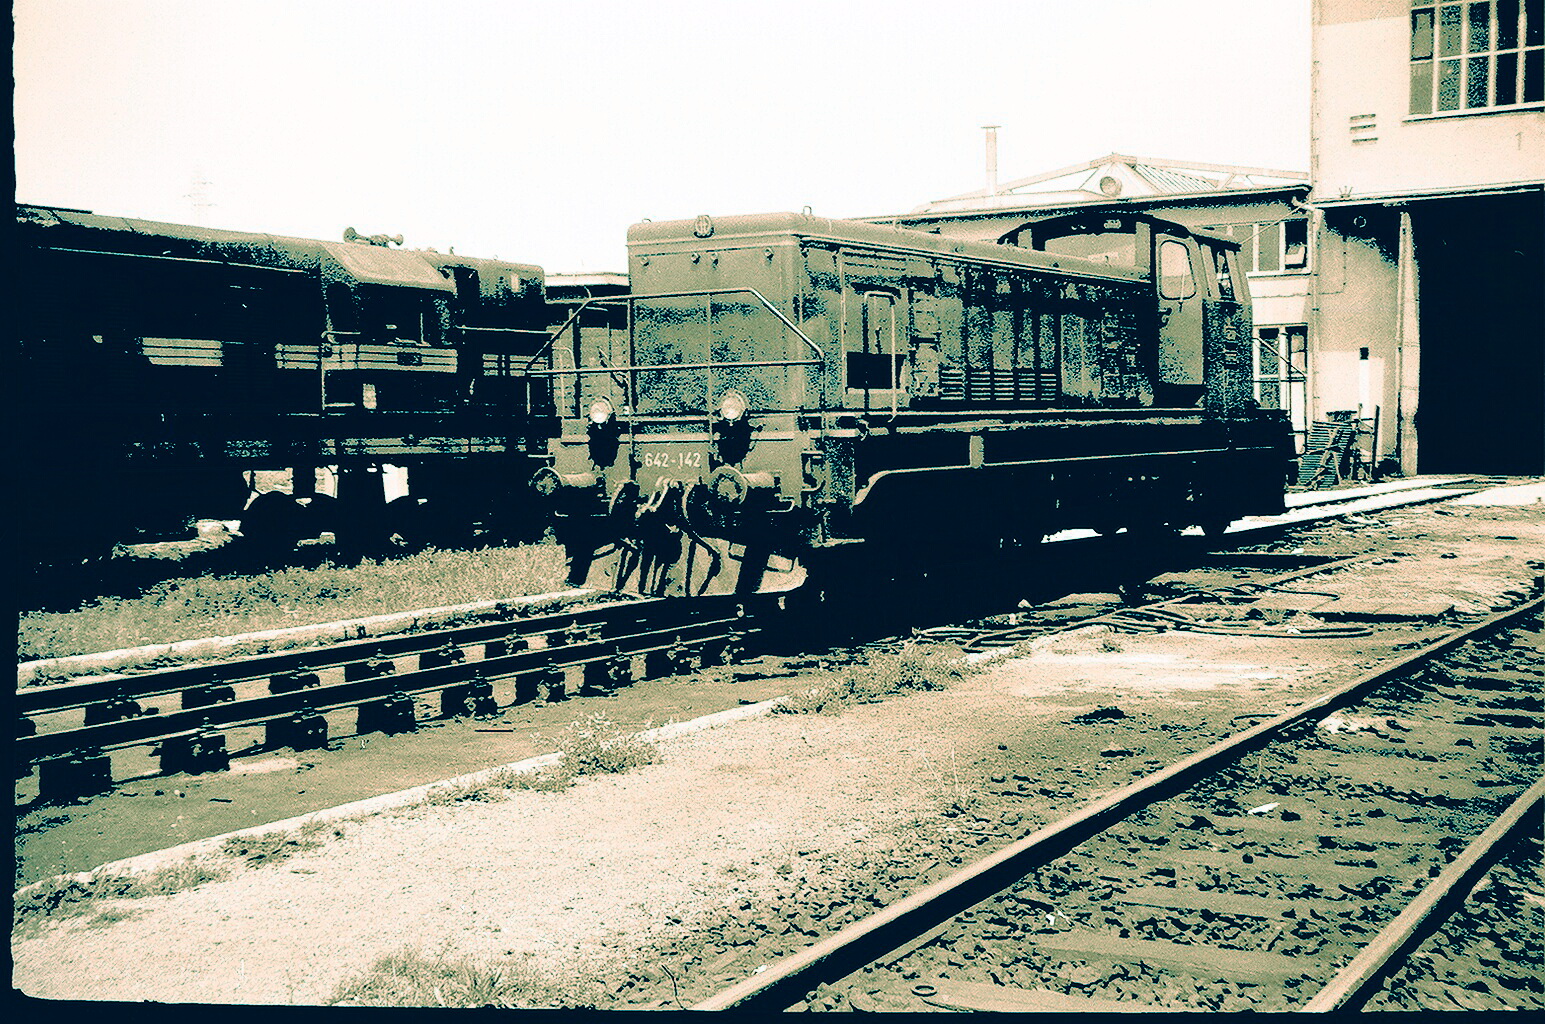 Lokomotiva 642-142 ispred kninskog depoa, 1978.g.jpg